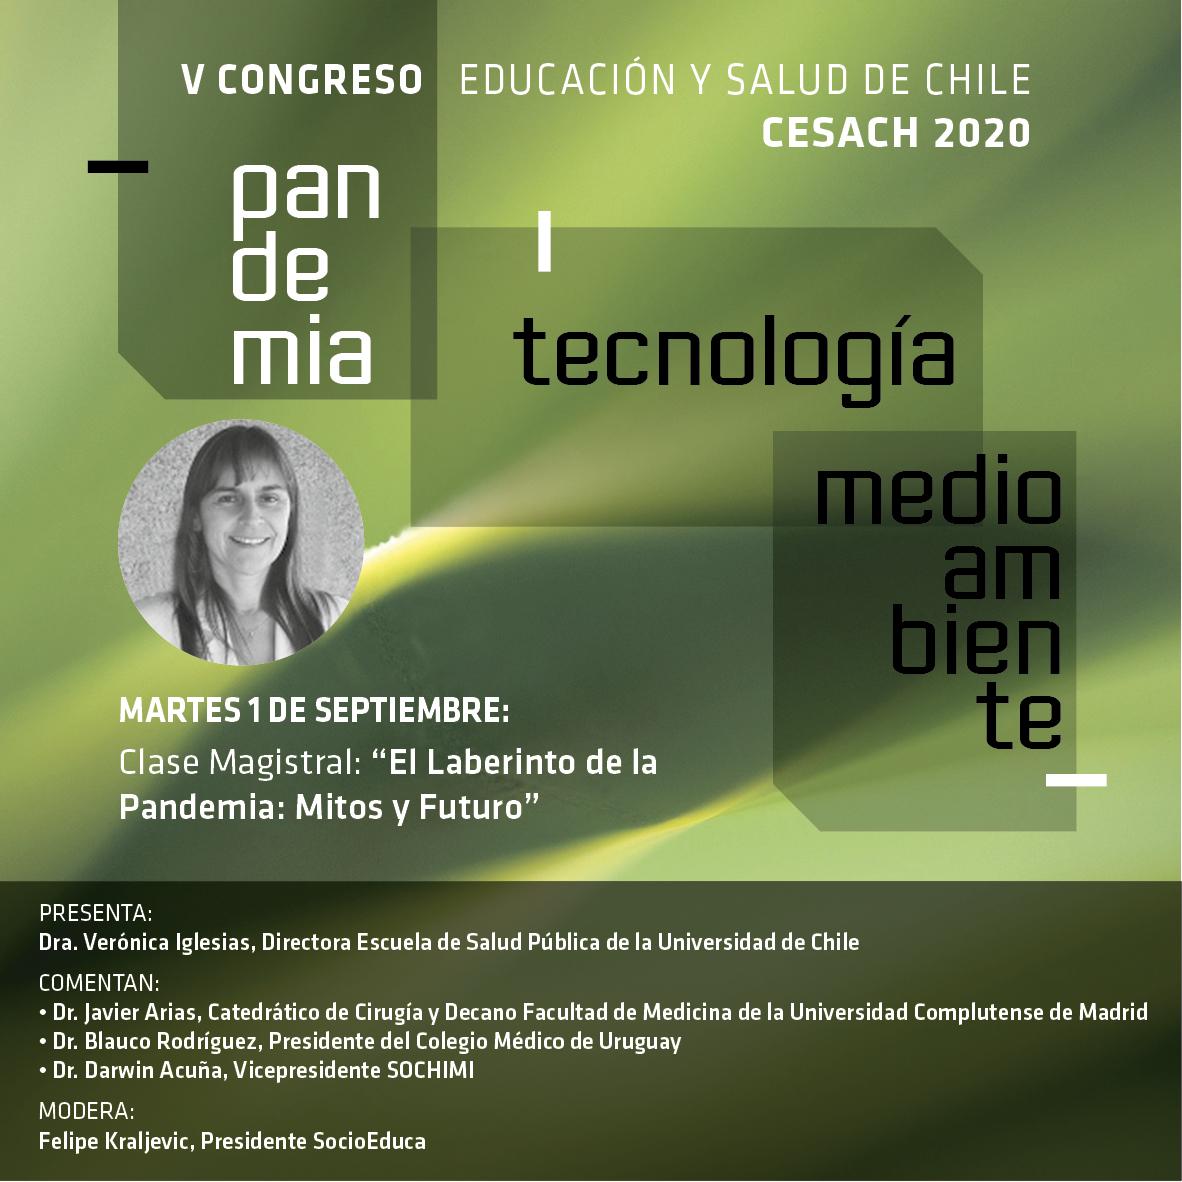 V Congreso de Educación y Salud de Chile - CESACH 2020